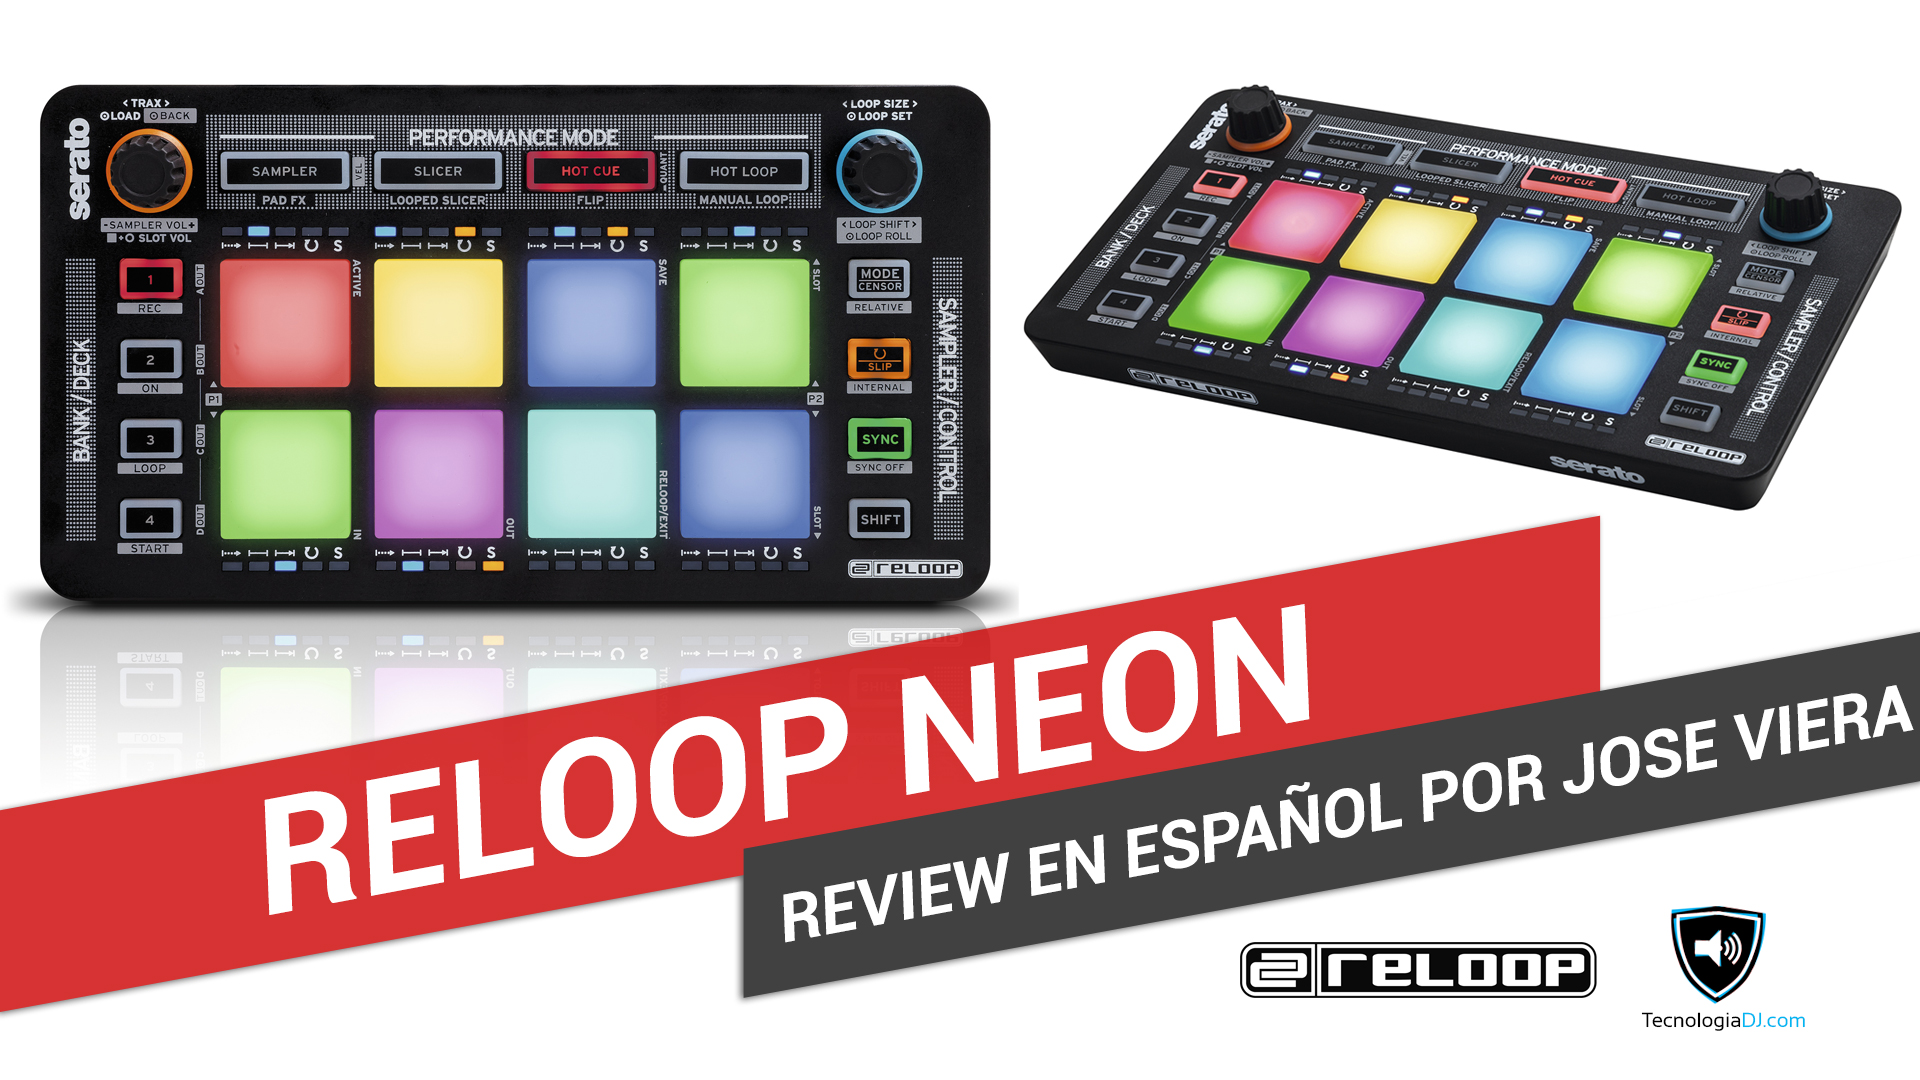 Review en español controlador Reloop Neon